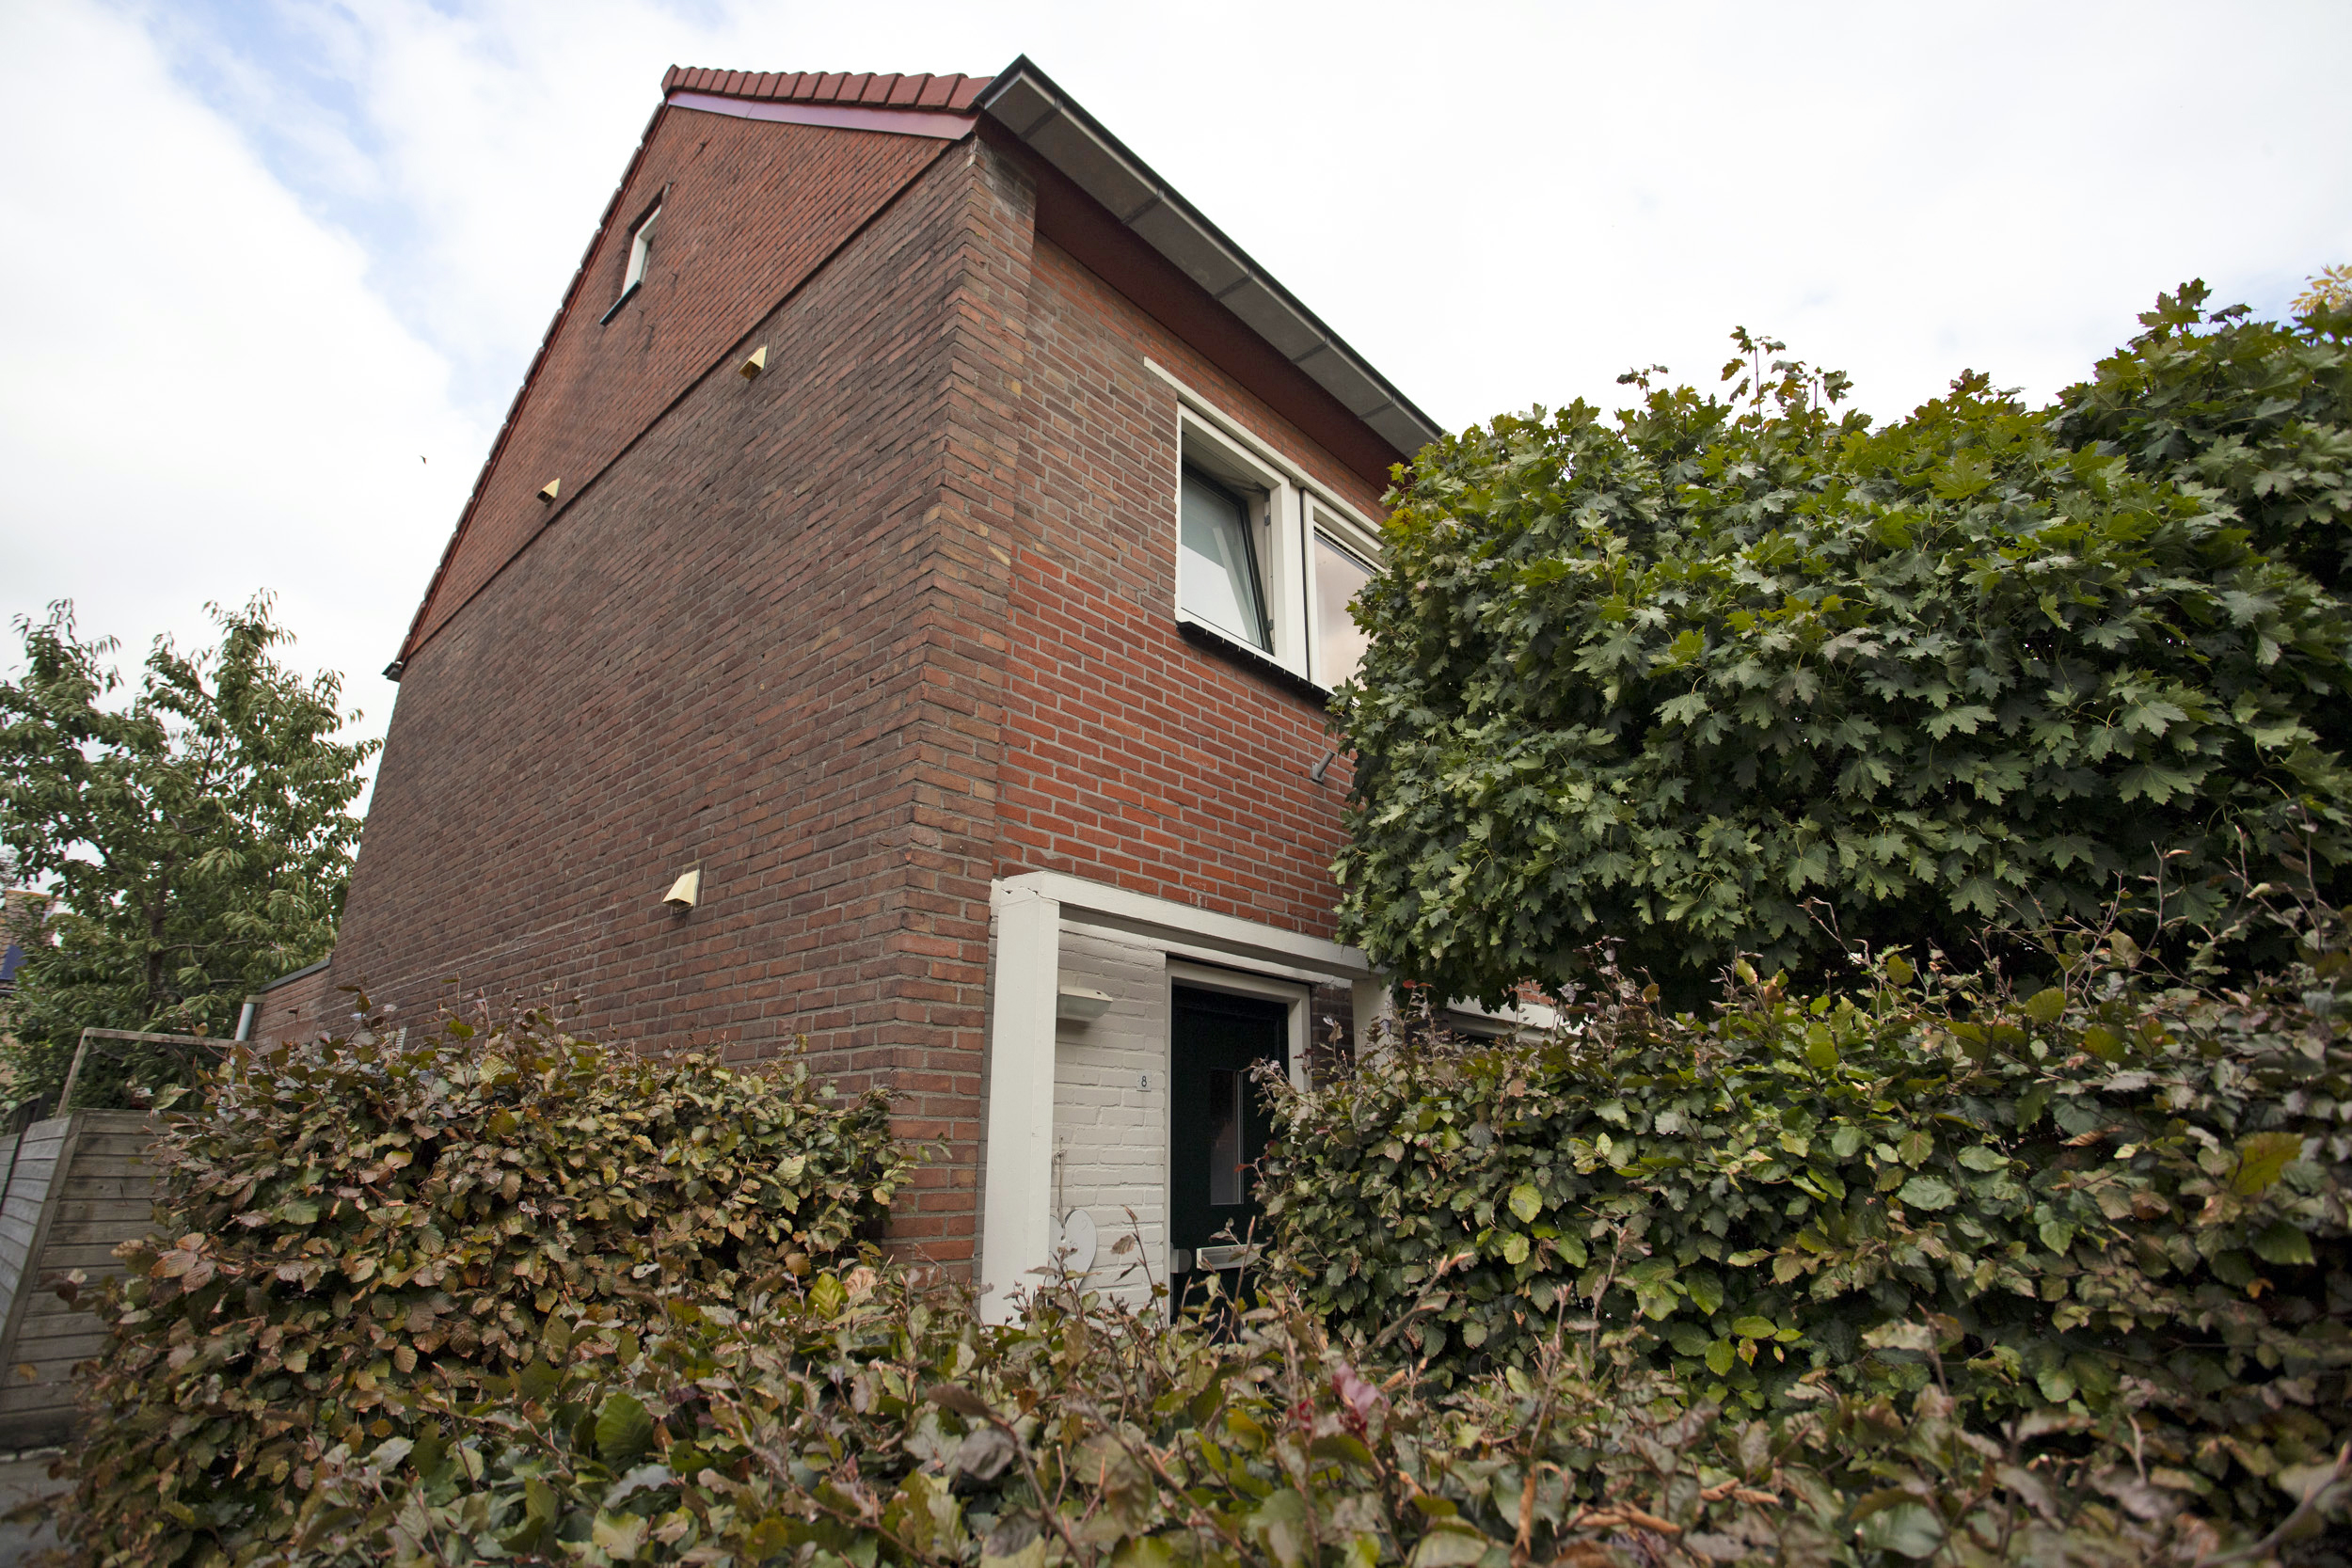 Margrietstraat 8, 4751 BD Oud Gastel, Nederland